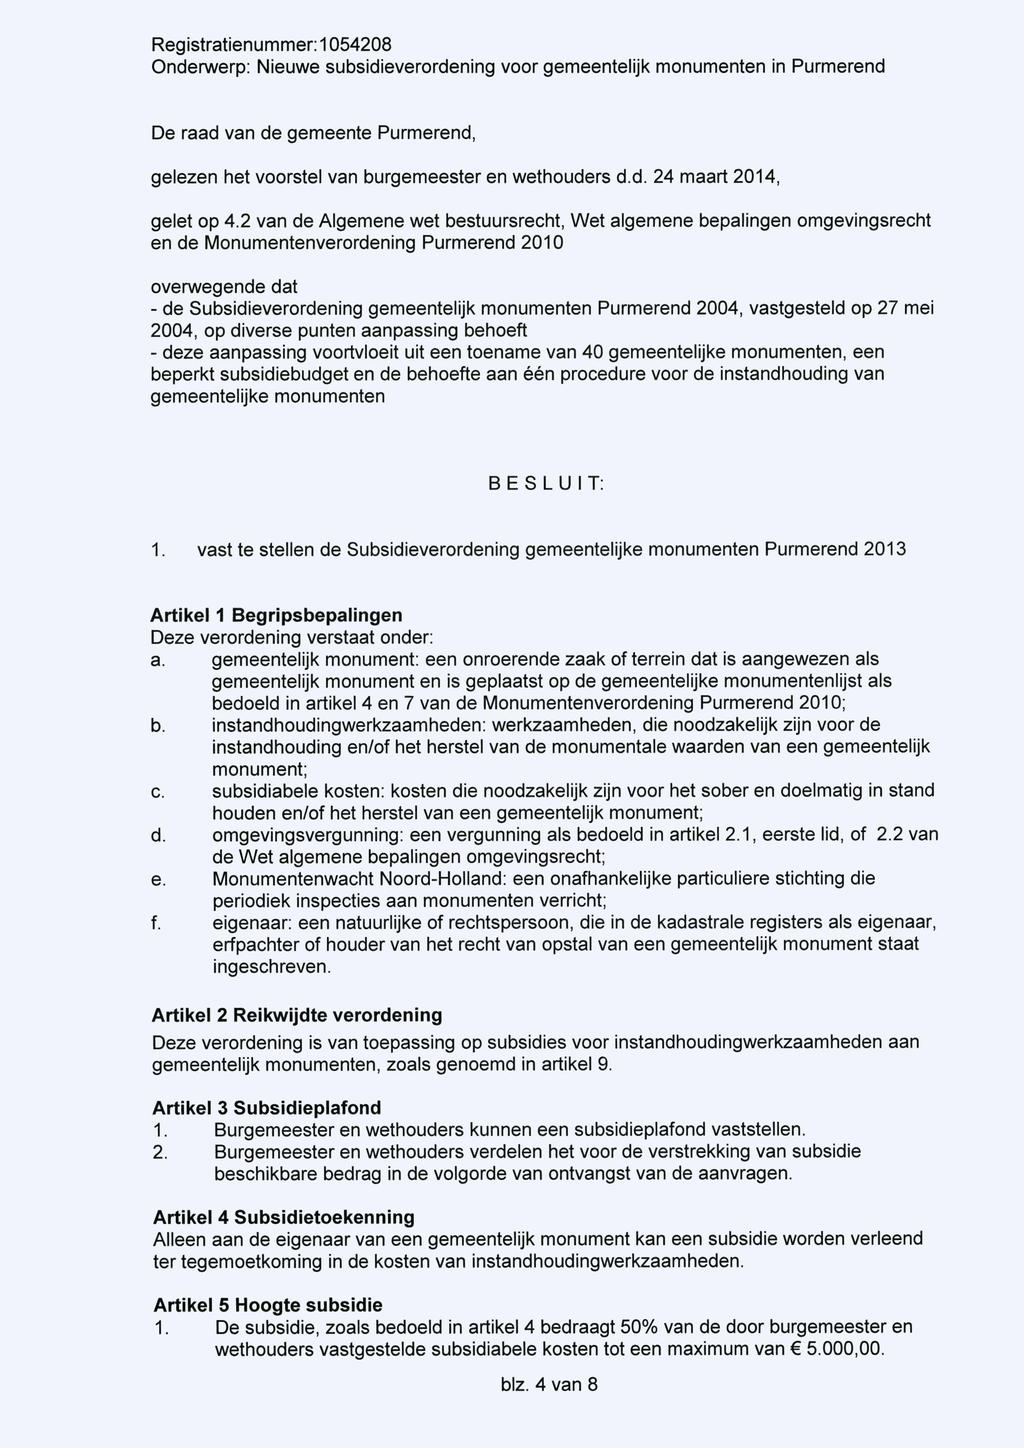 De raad van de gemeente Purmerend, gelezen het voorstel van burgemeester en wethouders d.d. 24 maart 2014, gelet op 4.